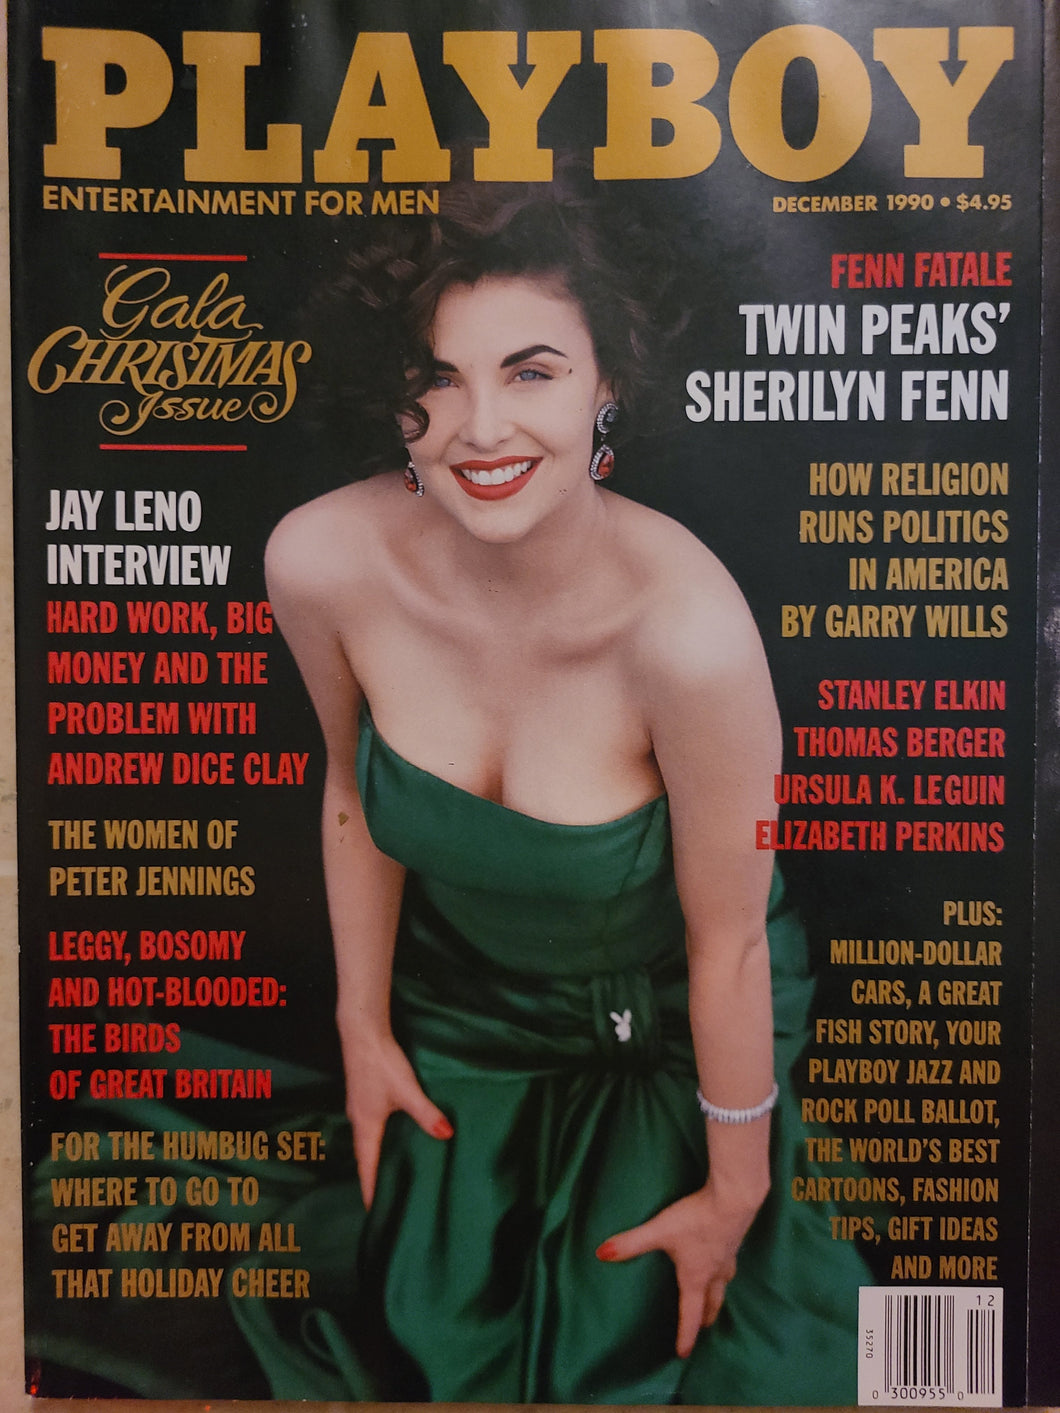 Playboy - December 1990 (Twin Peaks' Sherilyn Fenn)